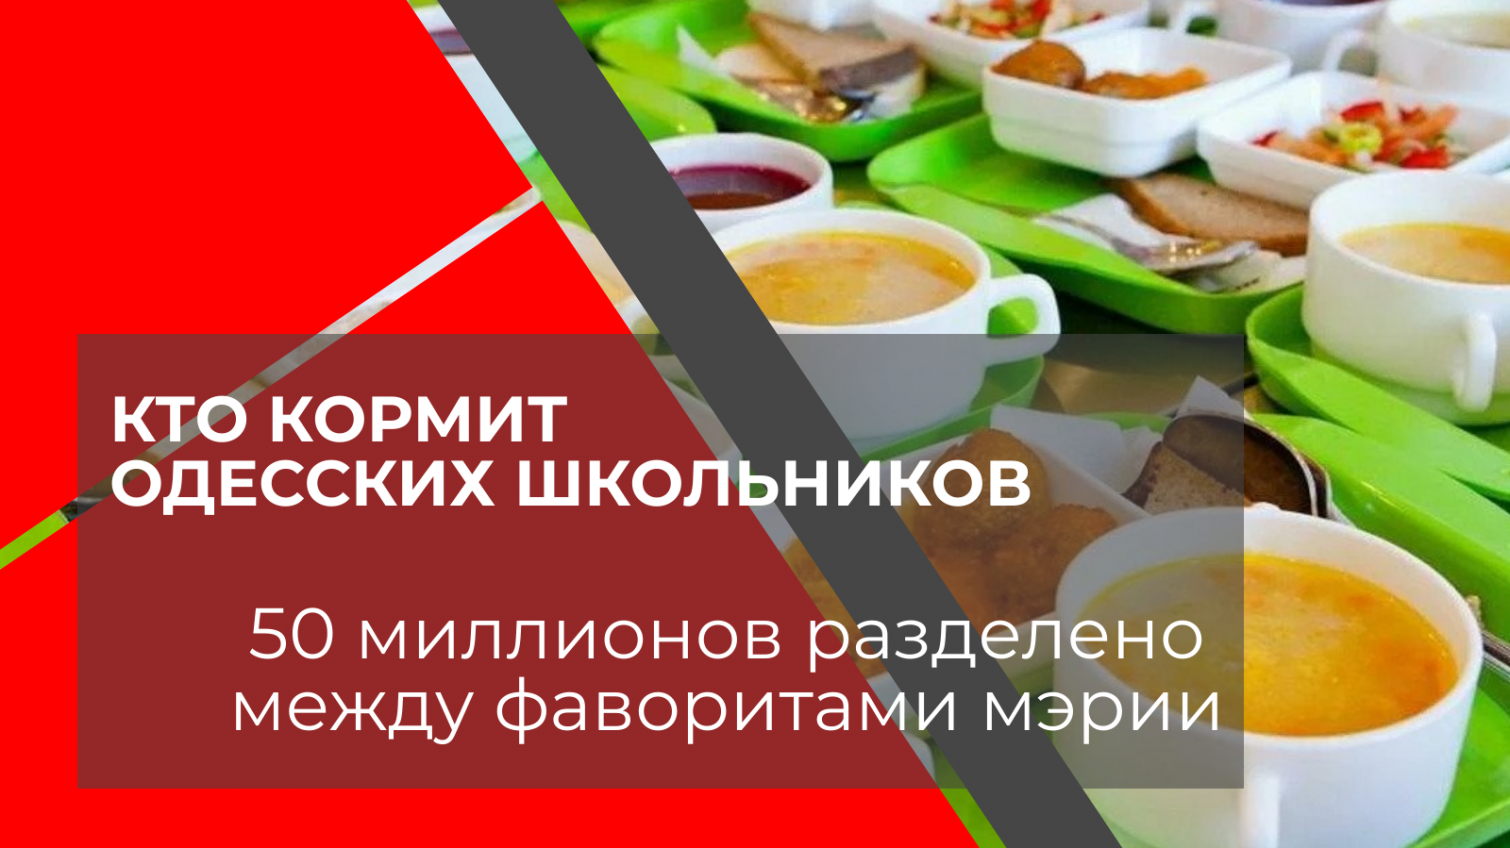 Кто кормит одесских школьников: 50 миллионов разделено между фаворитам мэрии (документ) «фото»